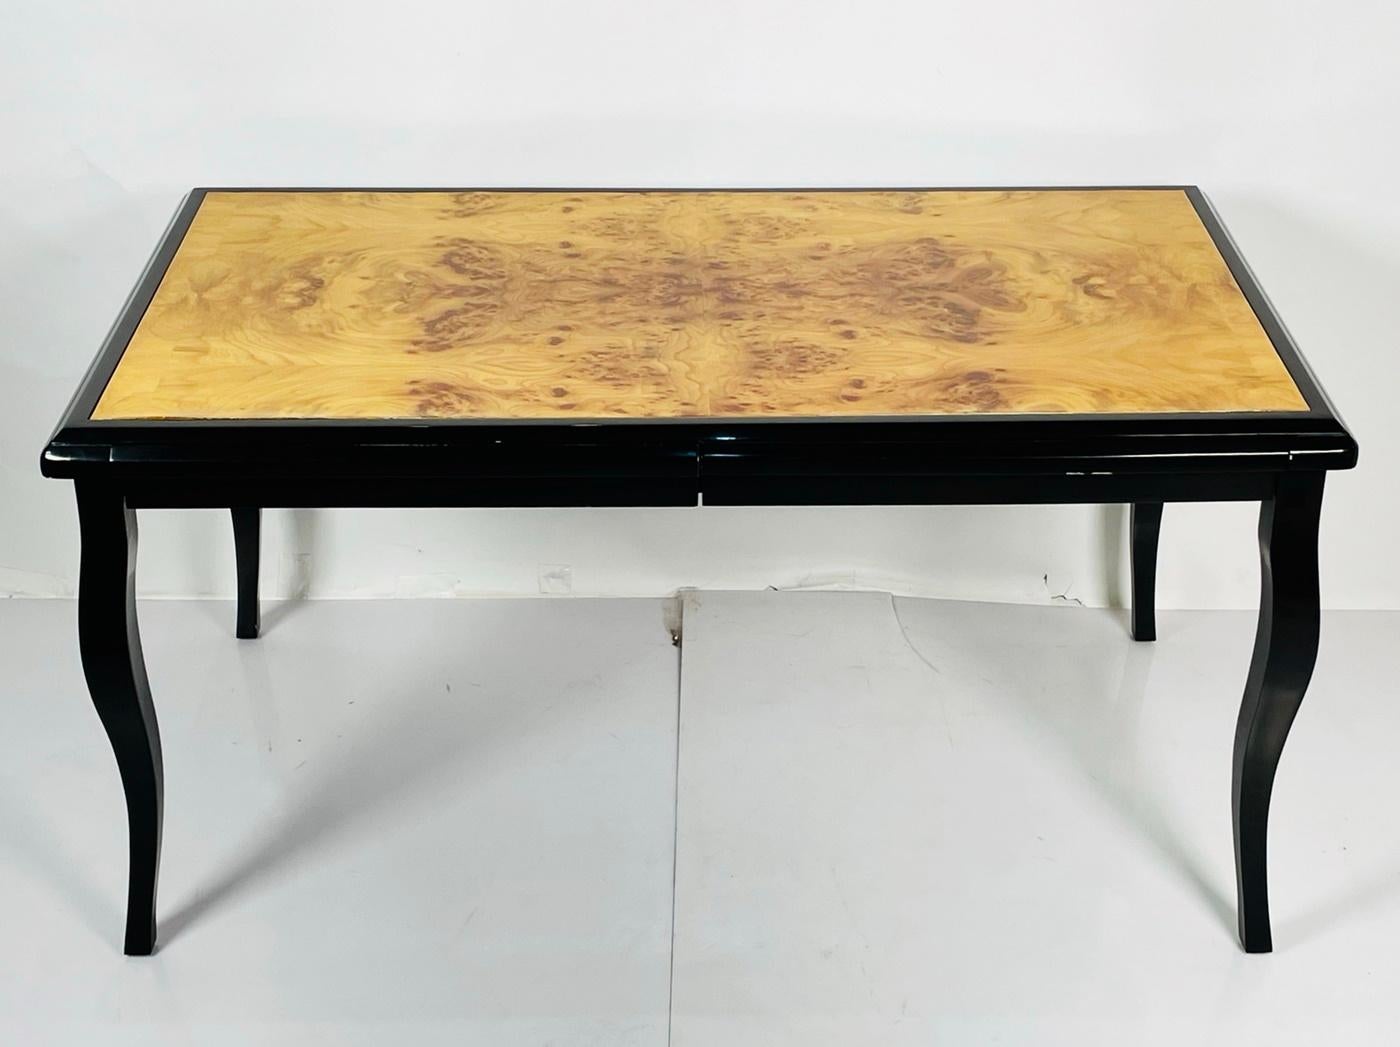 Wir stellen unseren exquisiten Vintage-Schreibtisch mit Wurzelholzplatte vor, der von der legendären Pace Collection'S aus den 1970er Jahren in den USA inspiriert ist. Dieses atemberaubende Möbelstück verbindet zeitlose Eleganz mit praktischer